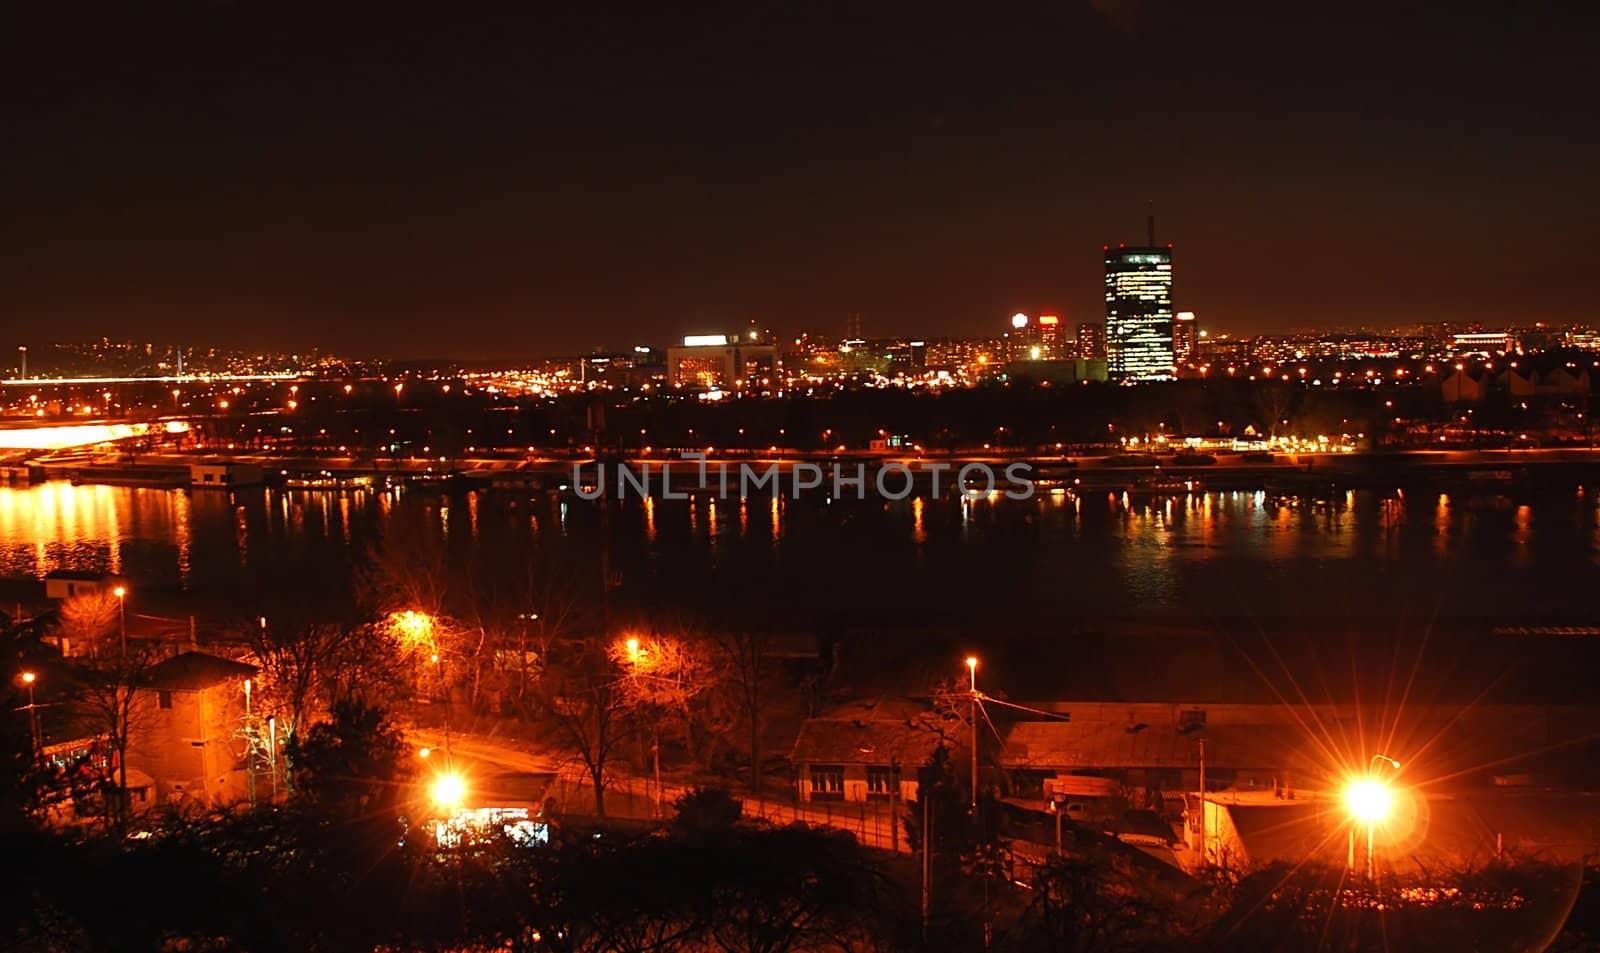 cityscape of night illuminated Belgrade, Serbia over river